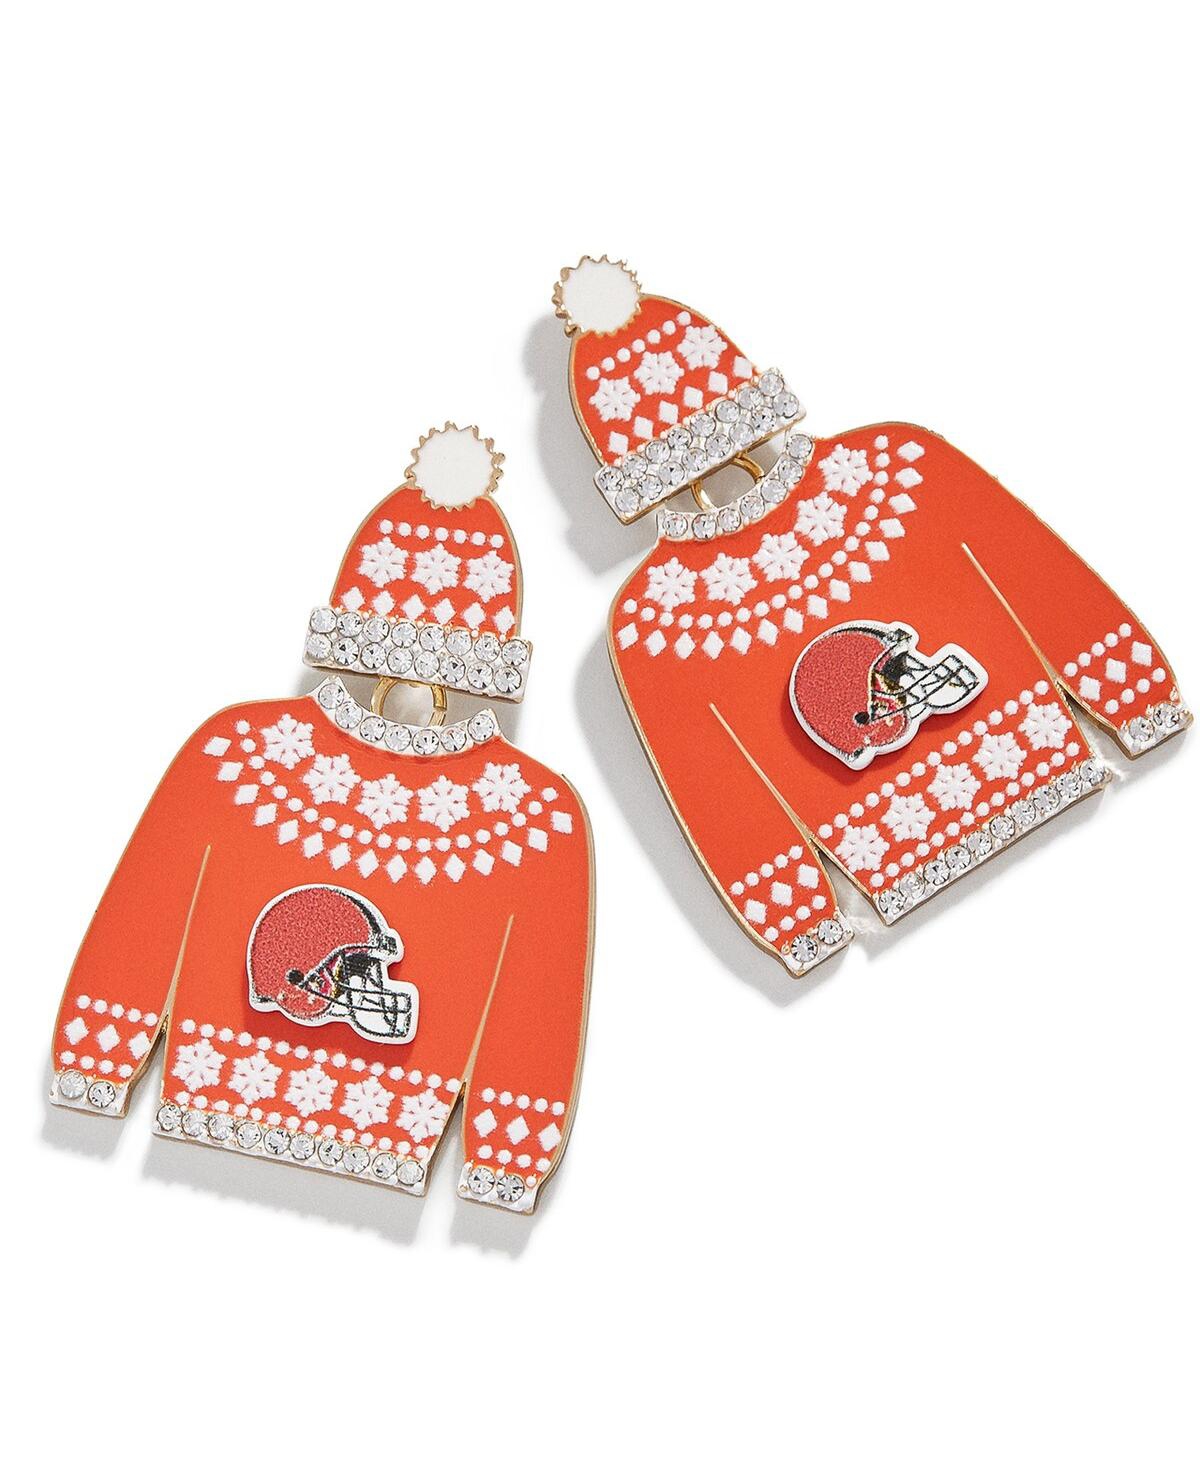 Women's Baublebar Cleveland Browns Sweater Earrings - Orange